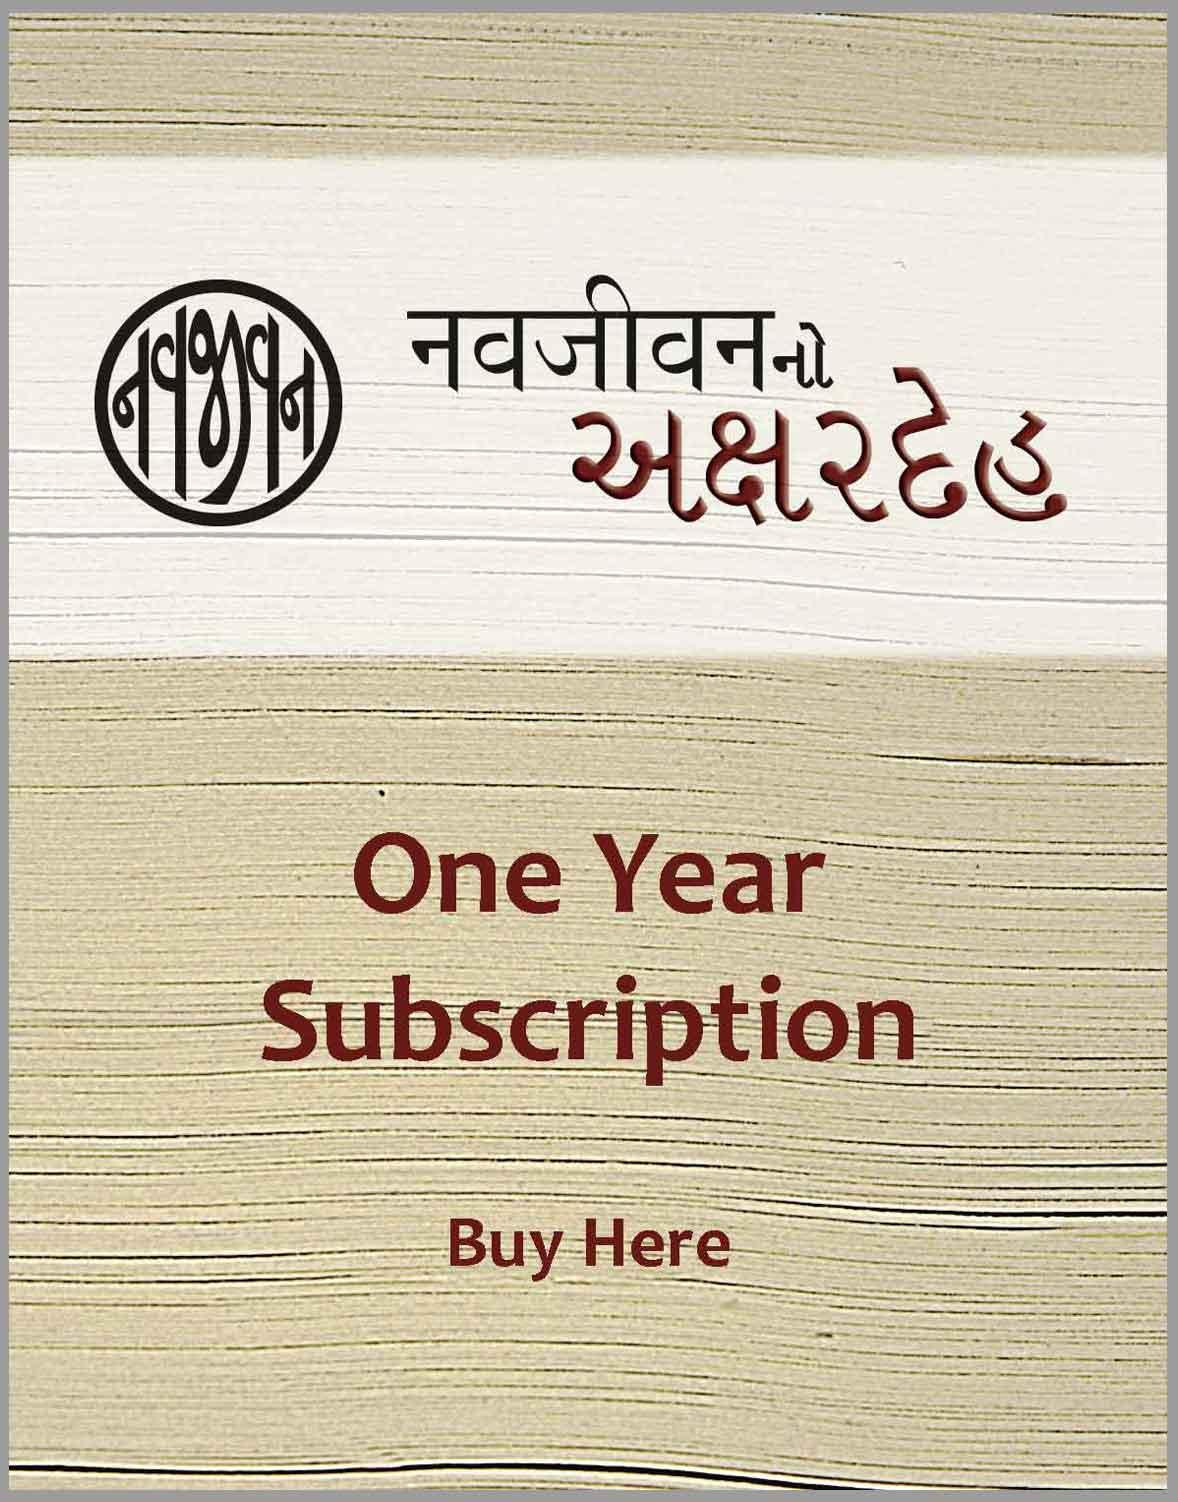 Navajivanno Akshardeh-One Year Subscription (નવજીવનનો અક્ષરદેહ-એક વર્ષનું લવાજમ)